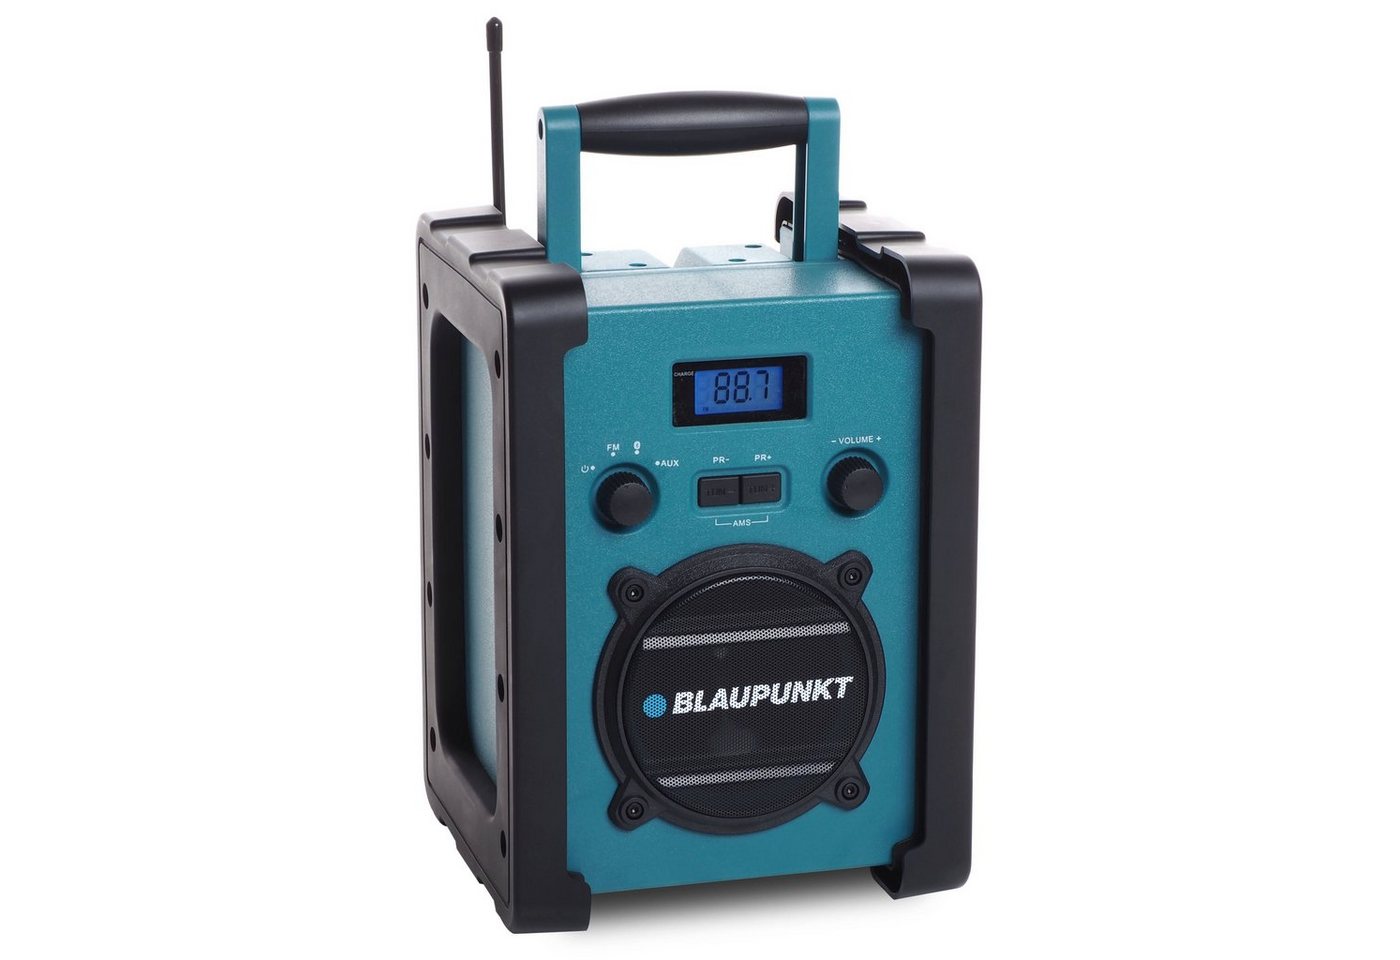 Blaupunkt BSR 20, Baustellenradio mit Akku, Bluetooth, AUX-IN, Schutzklasse IPX5 Baustellenradio (Radio (FM), 5,00 W, Bluetooth, 14 std. Laufzeit, Staub- und strahlwassergeschützt, Aux-in) von Blaupunkt